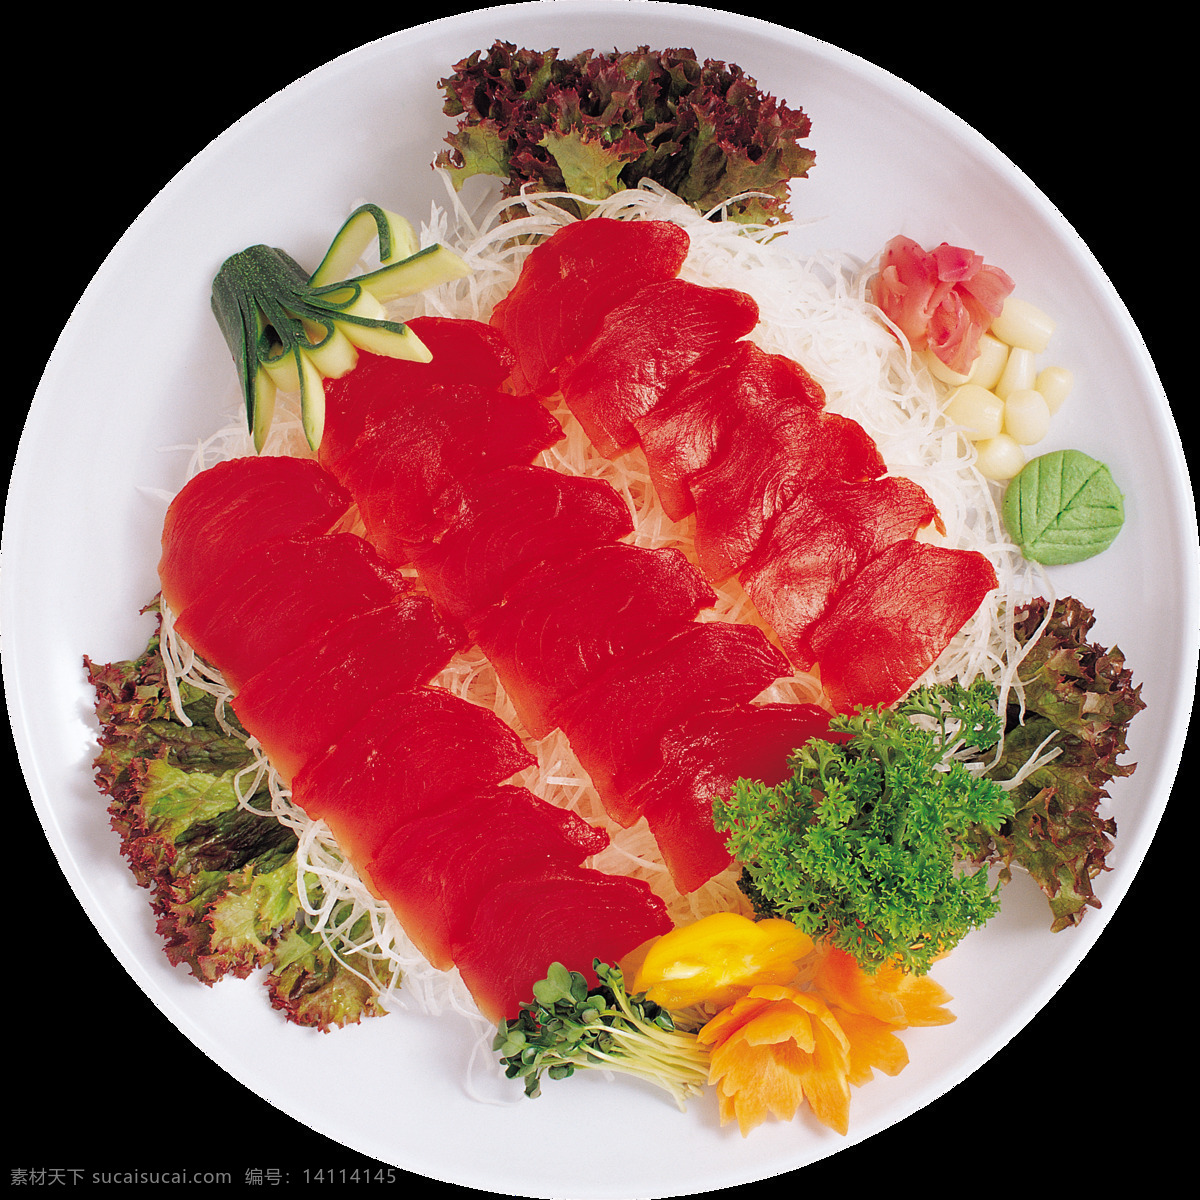 日式 精致 料理 美食 产品 实物 产品实物 日本美食 日式美食 三文鱼 生鲜